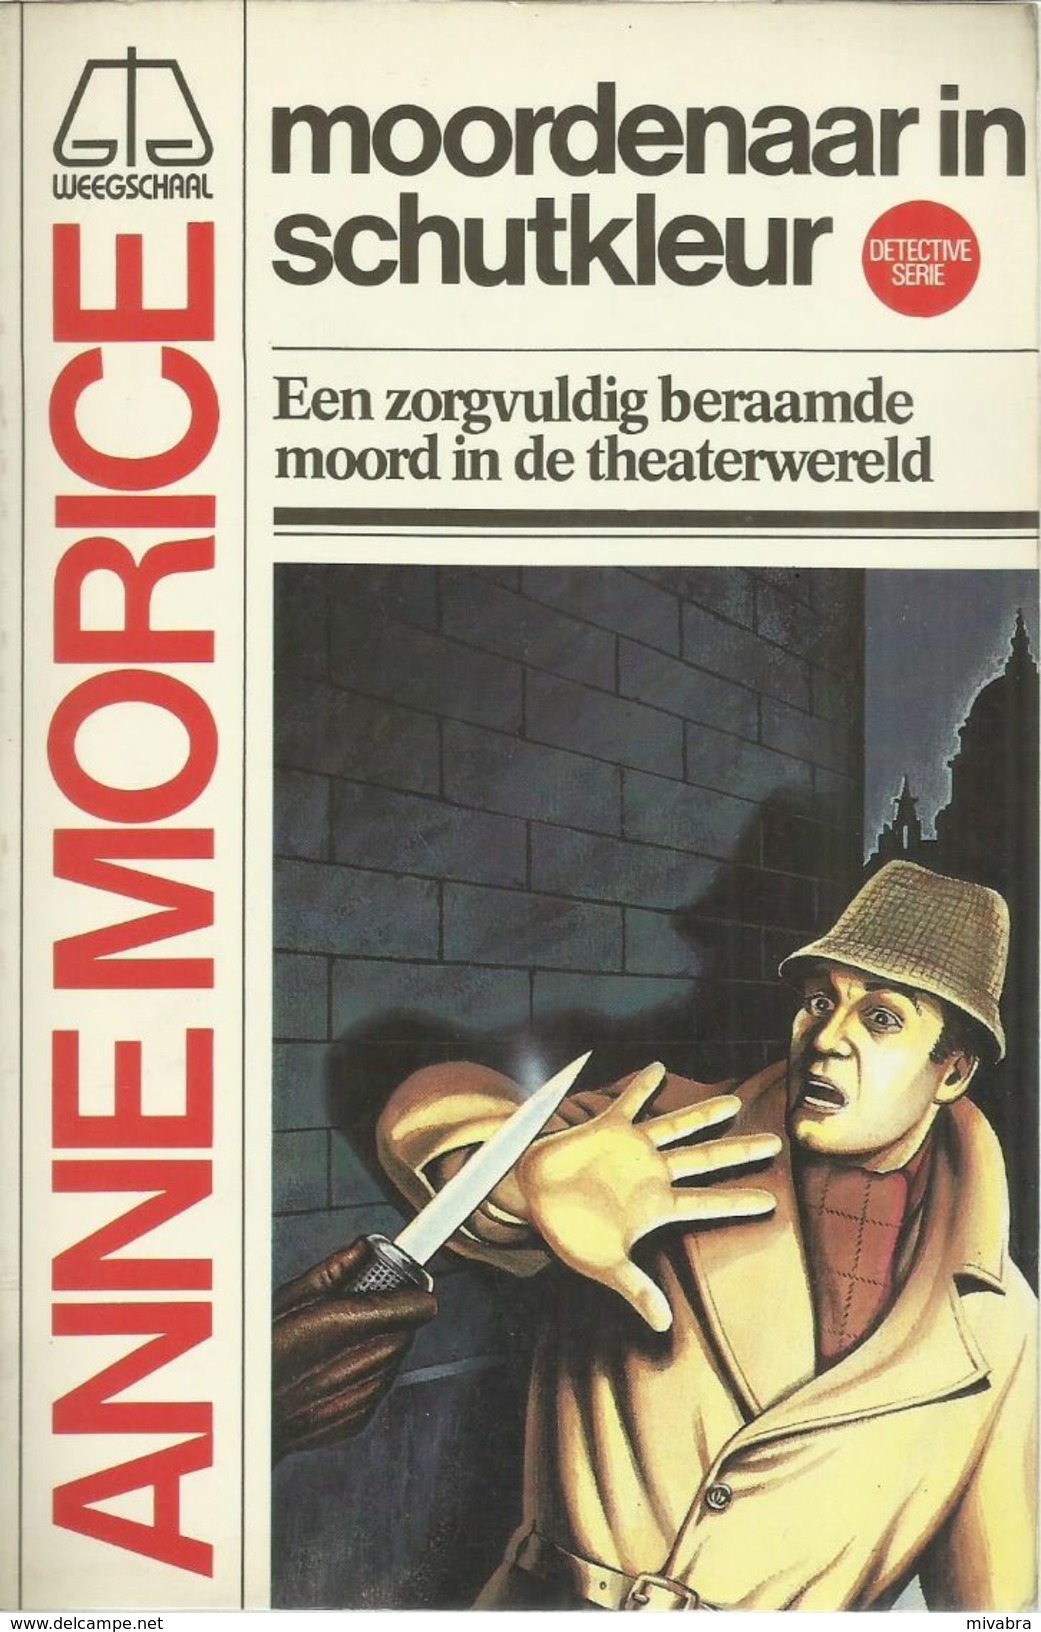 MOORDENAAR IN SCHUTKLEUR - ANNE MORICE - WEEGSCHAAL DETECTIVE SERIE N° 6 - 1e Druk 1982 - Spionage